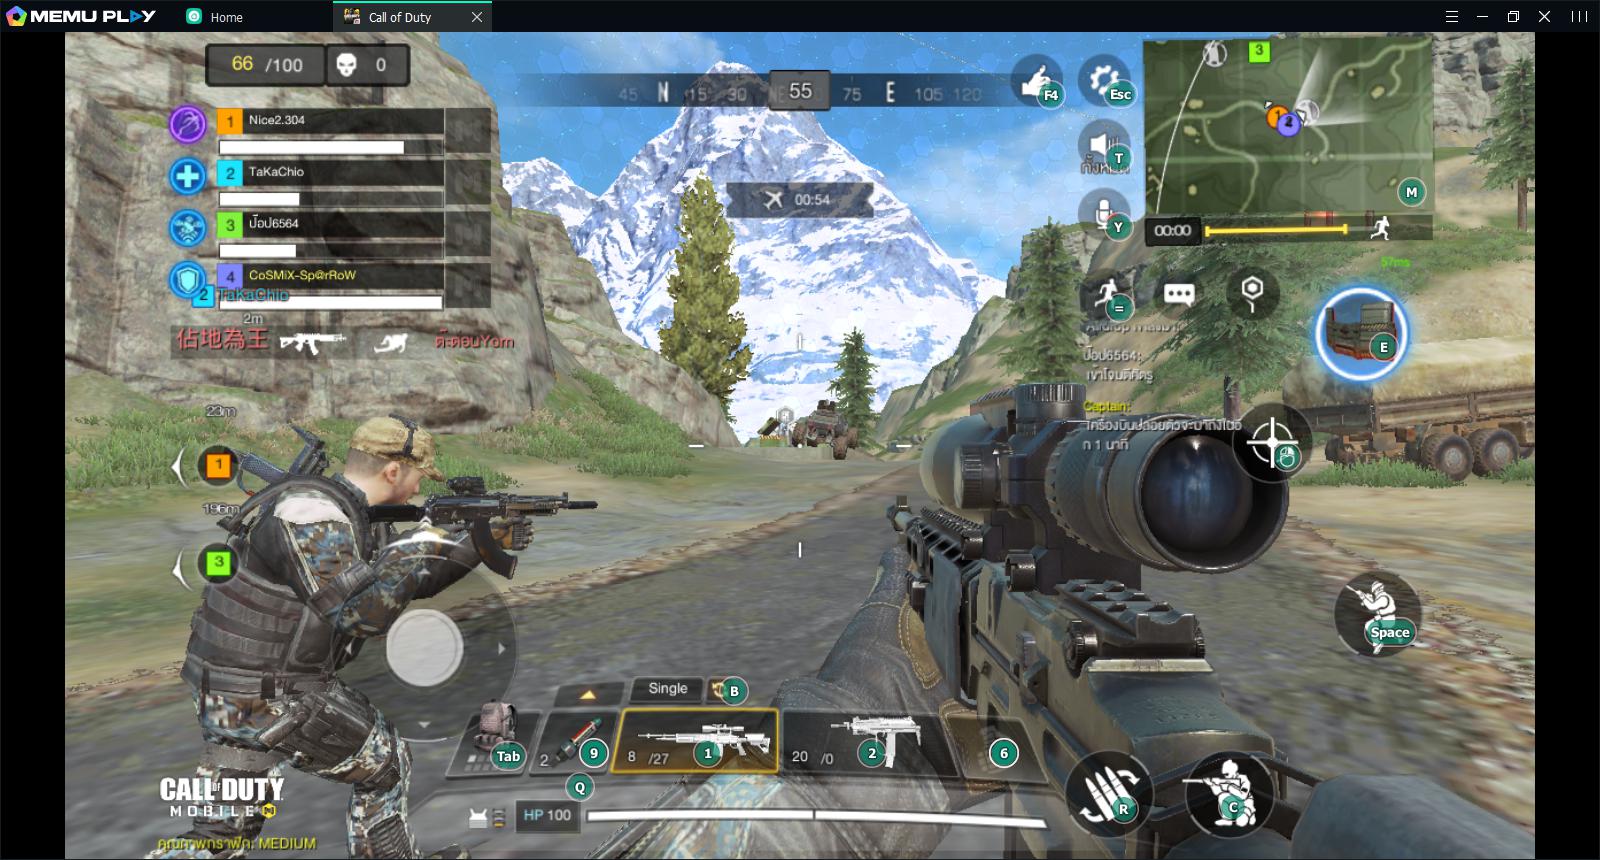 Best Emulator to Play Call of Duty Mobile on PC - MEmu Blog